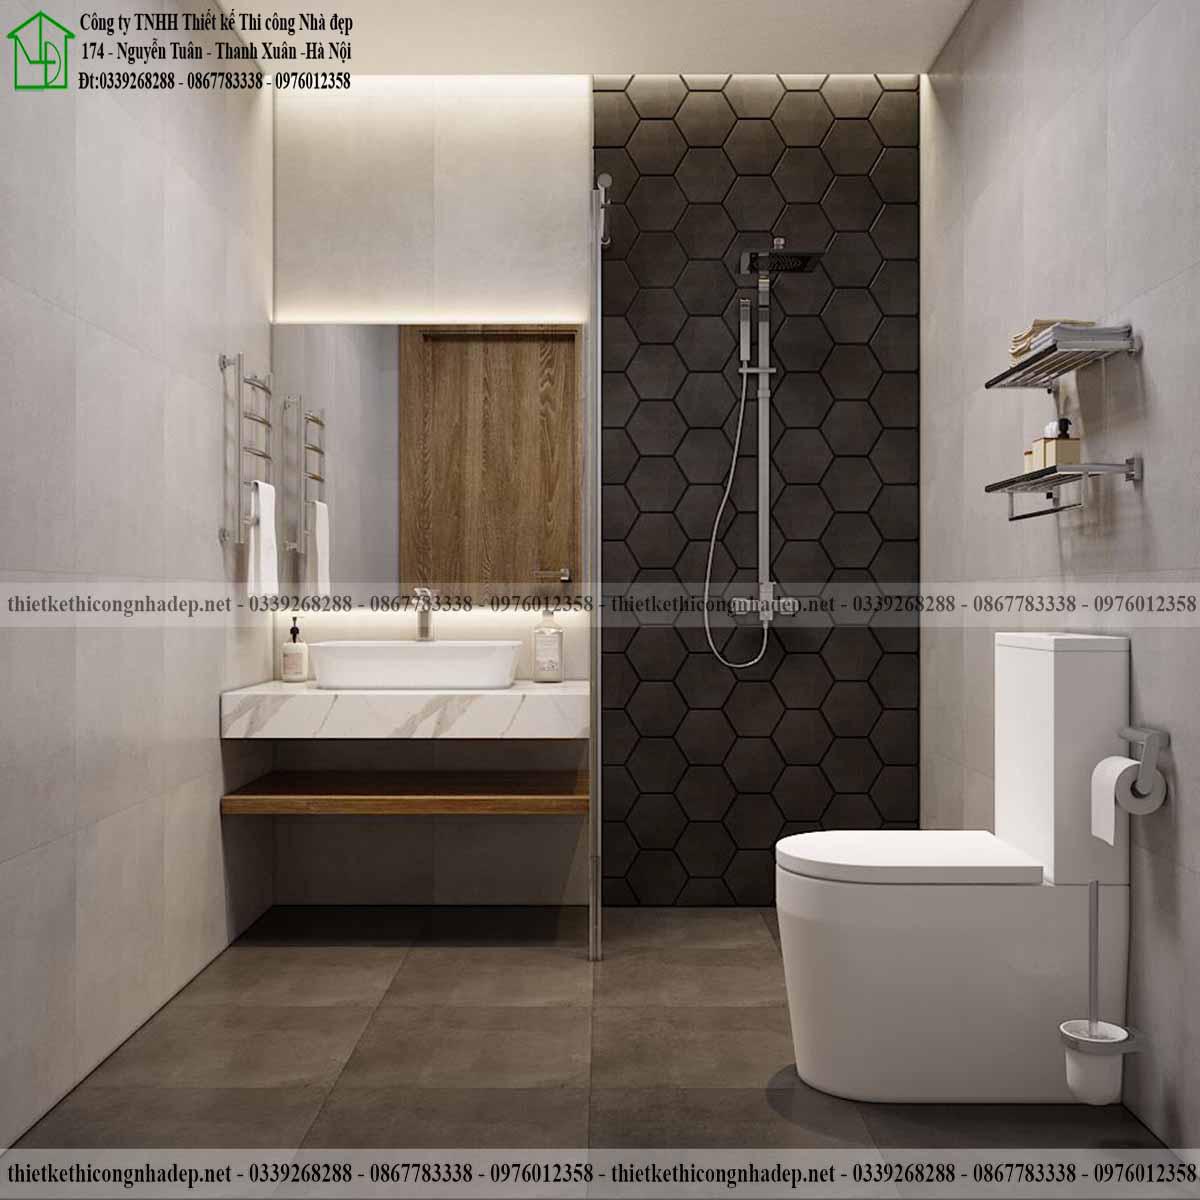 Thiết kế nội thất nhà vệ sinh nhà ống cấp 4